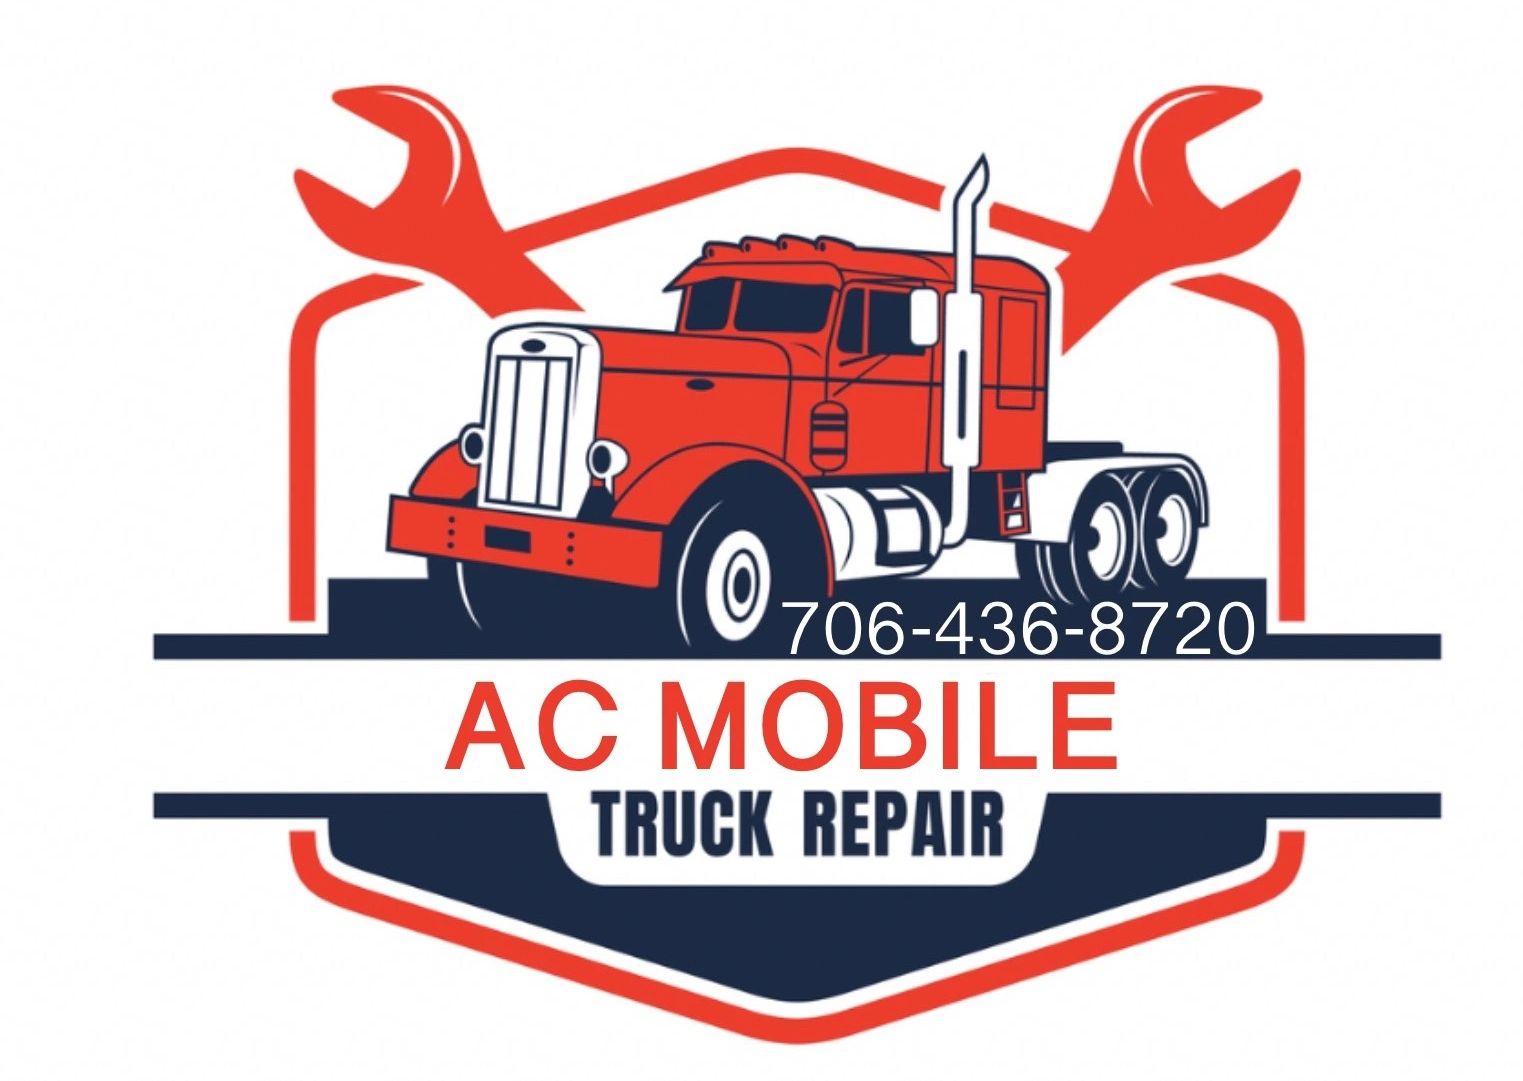 AC Mobile Truck Repair